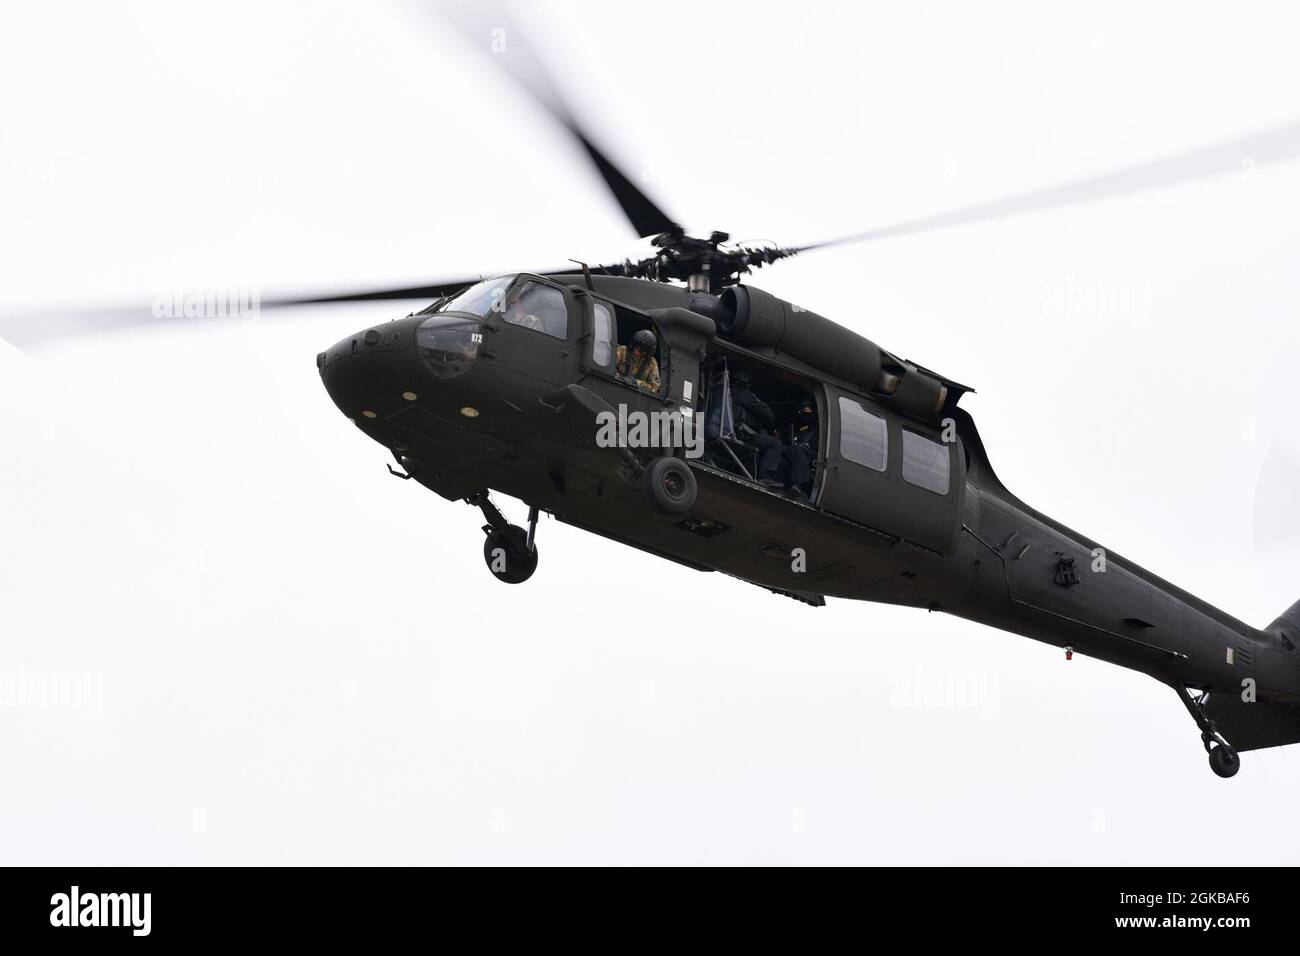 Die Verteidiger der Sicherheitskräfte des 169th Fighter Wing bilden eine Zusammenarbeit mit lokalen Strafverfolgungsbeamten des Spezialeinsatzteams des Sheriffs der Abteilung des Richland County, um agenturübergreifende aktive Schützentrainings auf der McEntire Joint National Guard Base, South Carolina, 2. März 2021, durchzuführen. UH-60 Black Hawk Mittellift-Utility-Helikopter vom South Carolina National gaurd's Company A, 1-111st Aviation Bataillon, transportierten die SRT, um sich den Verteidigern der US-Luftwaffe anzuschließen, um aktiv-Shooter-Übungsbedrohungen zu bekämpfen, und demonstrierten schnelle Reaktionsfähigkeit. Stockfoto